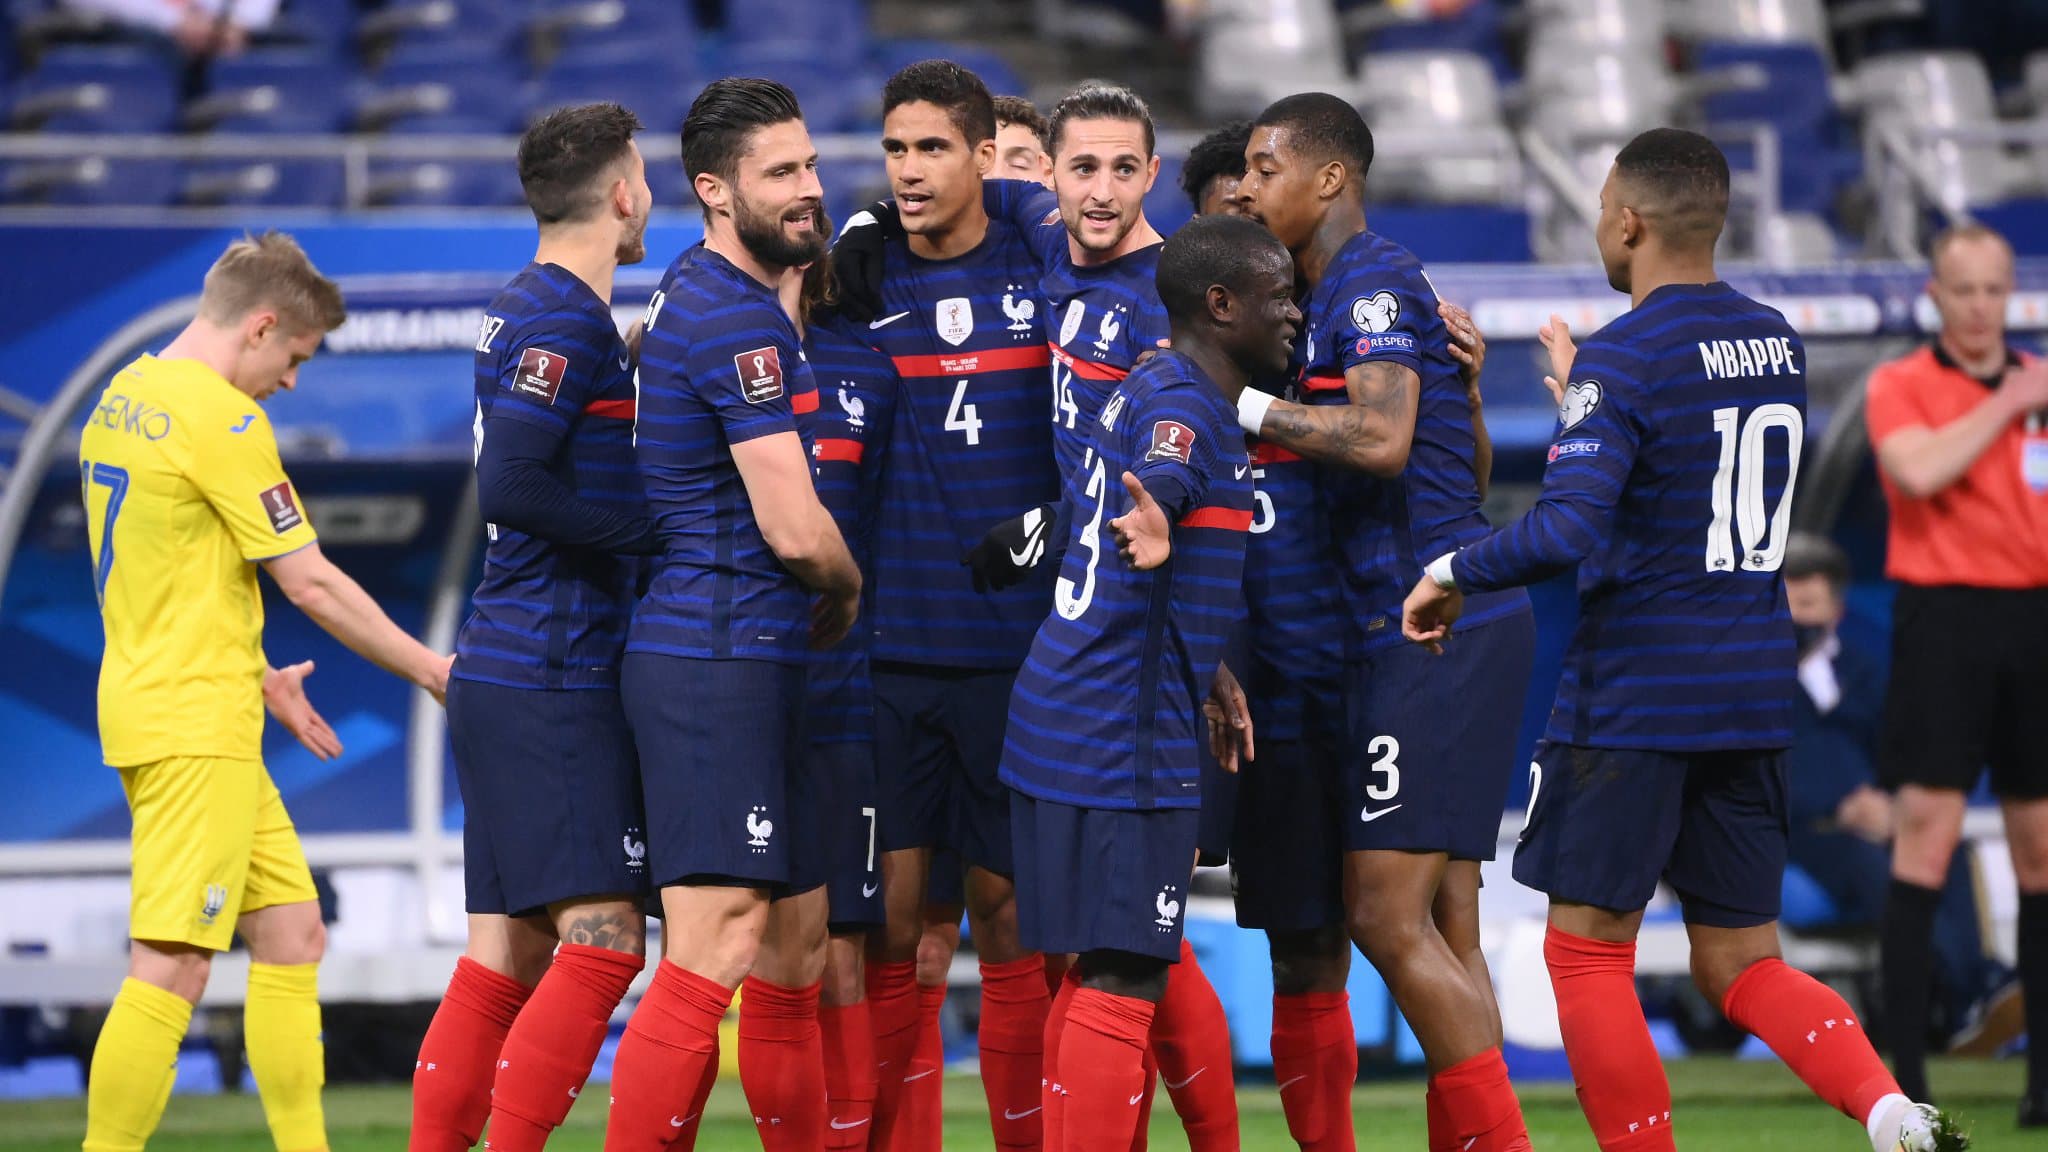 Есть команда в чемпионате франции. Сборная Франции ЧМ 2022. Сборная Франции футбол 2022. Футболисты сборной Франции 2022.